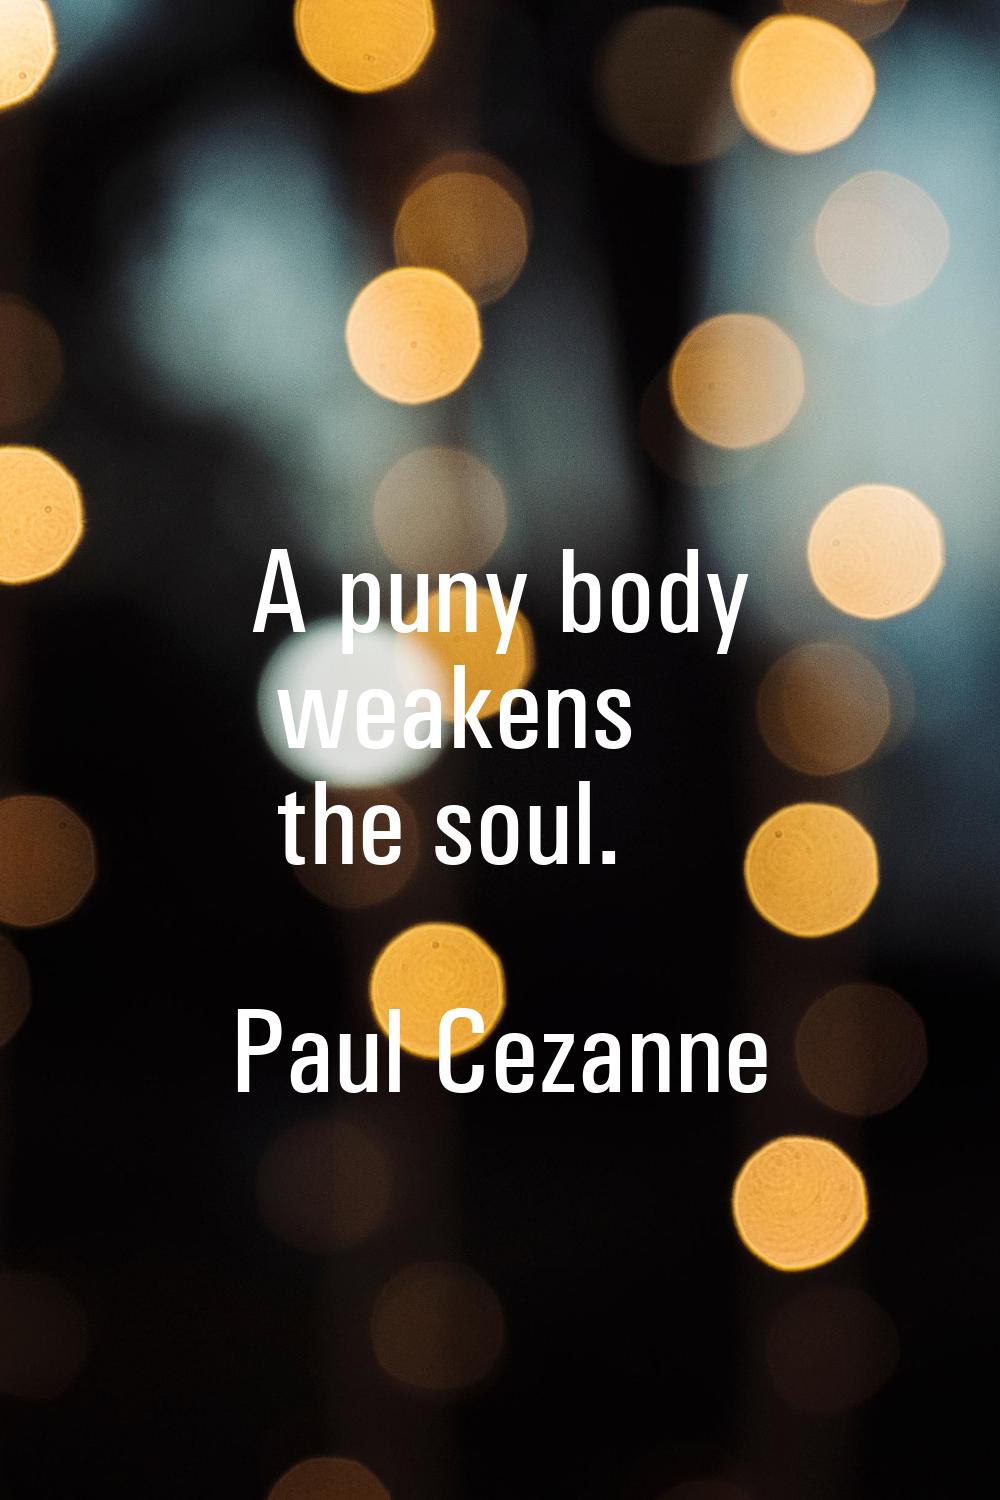 A puny body weakens the soul.